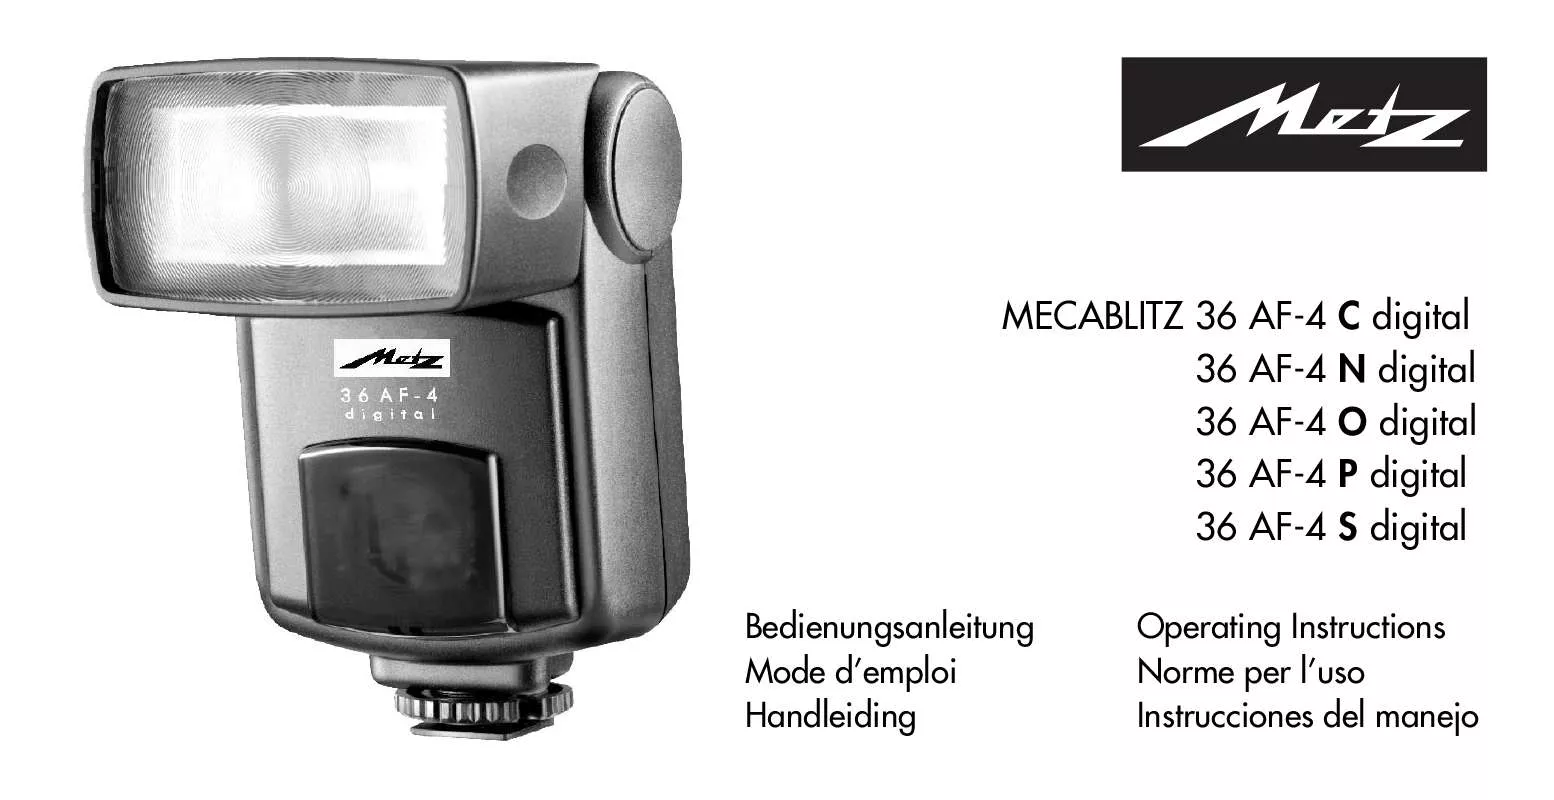 Mode d'emploi METZ MECABLITZ 36 AF-4 S DIGITAL